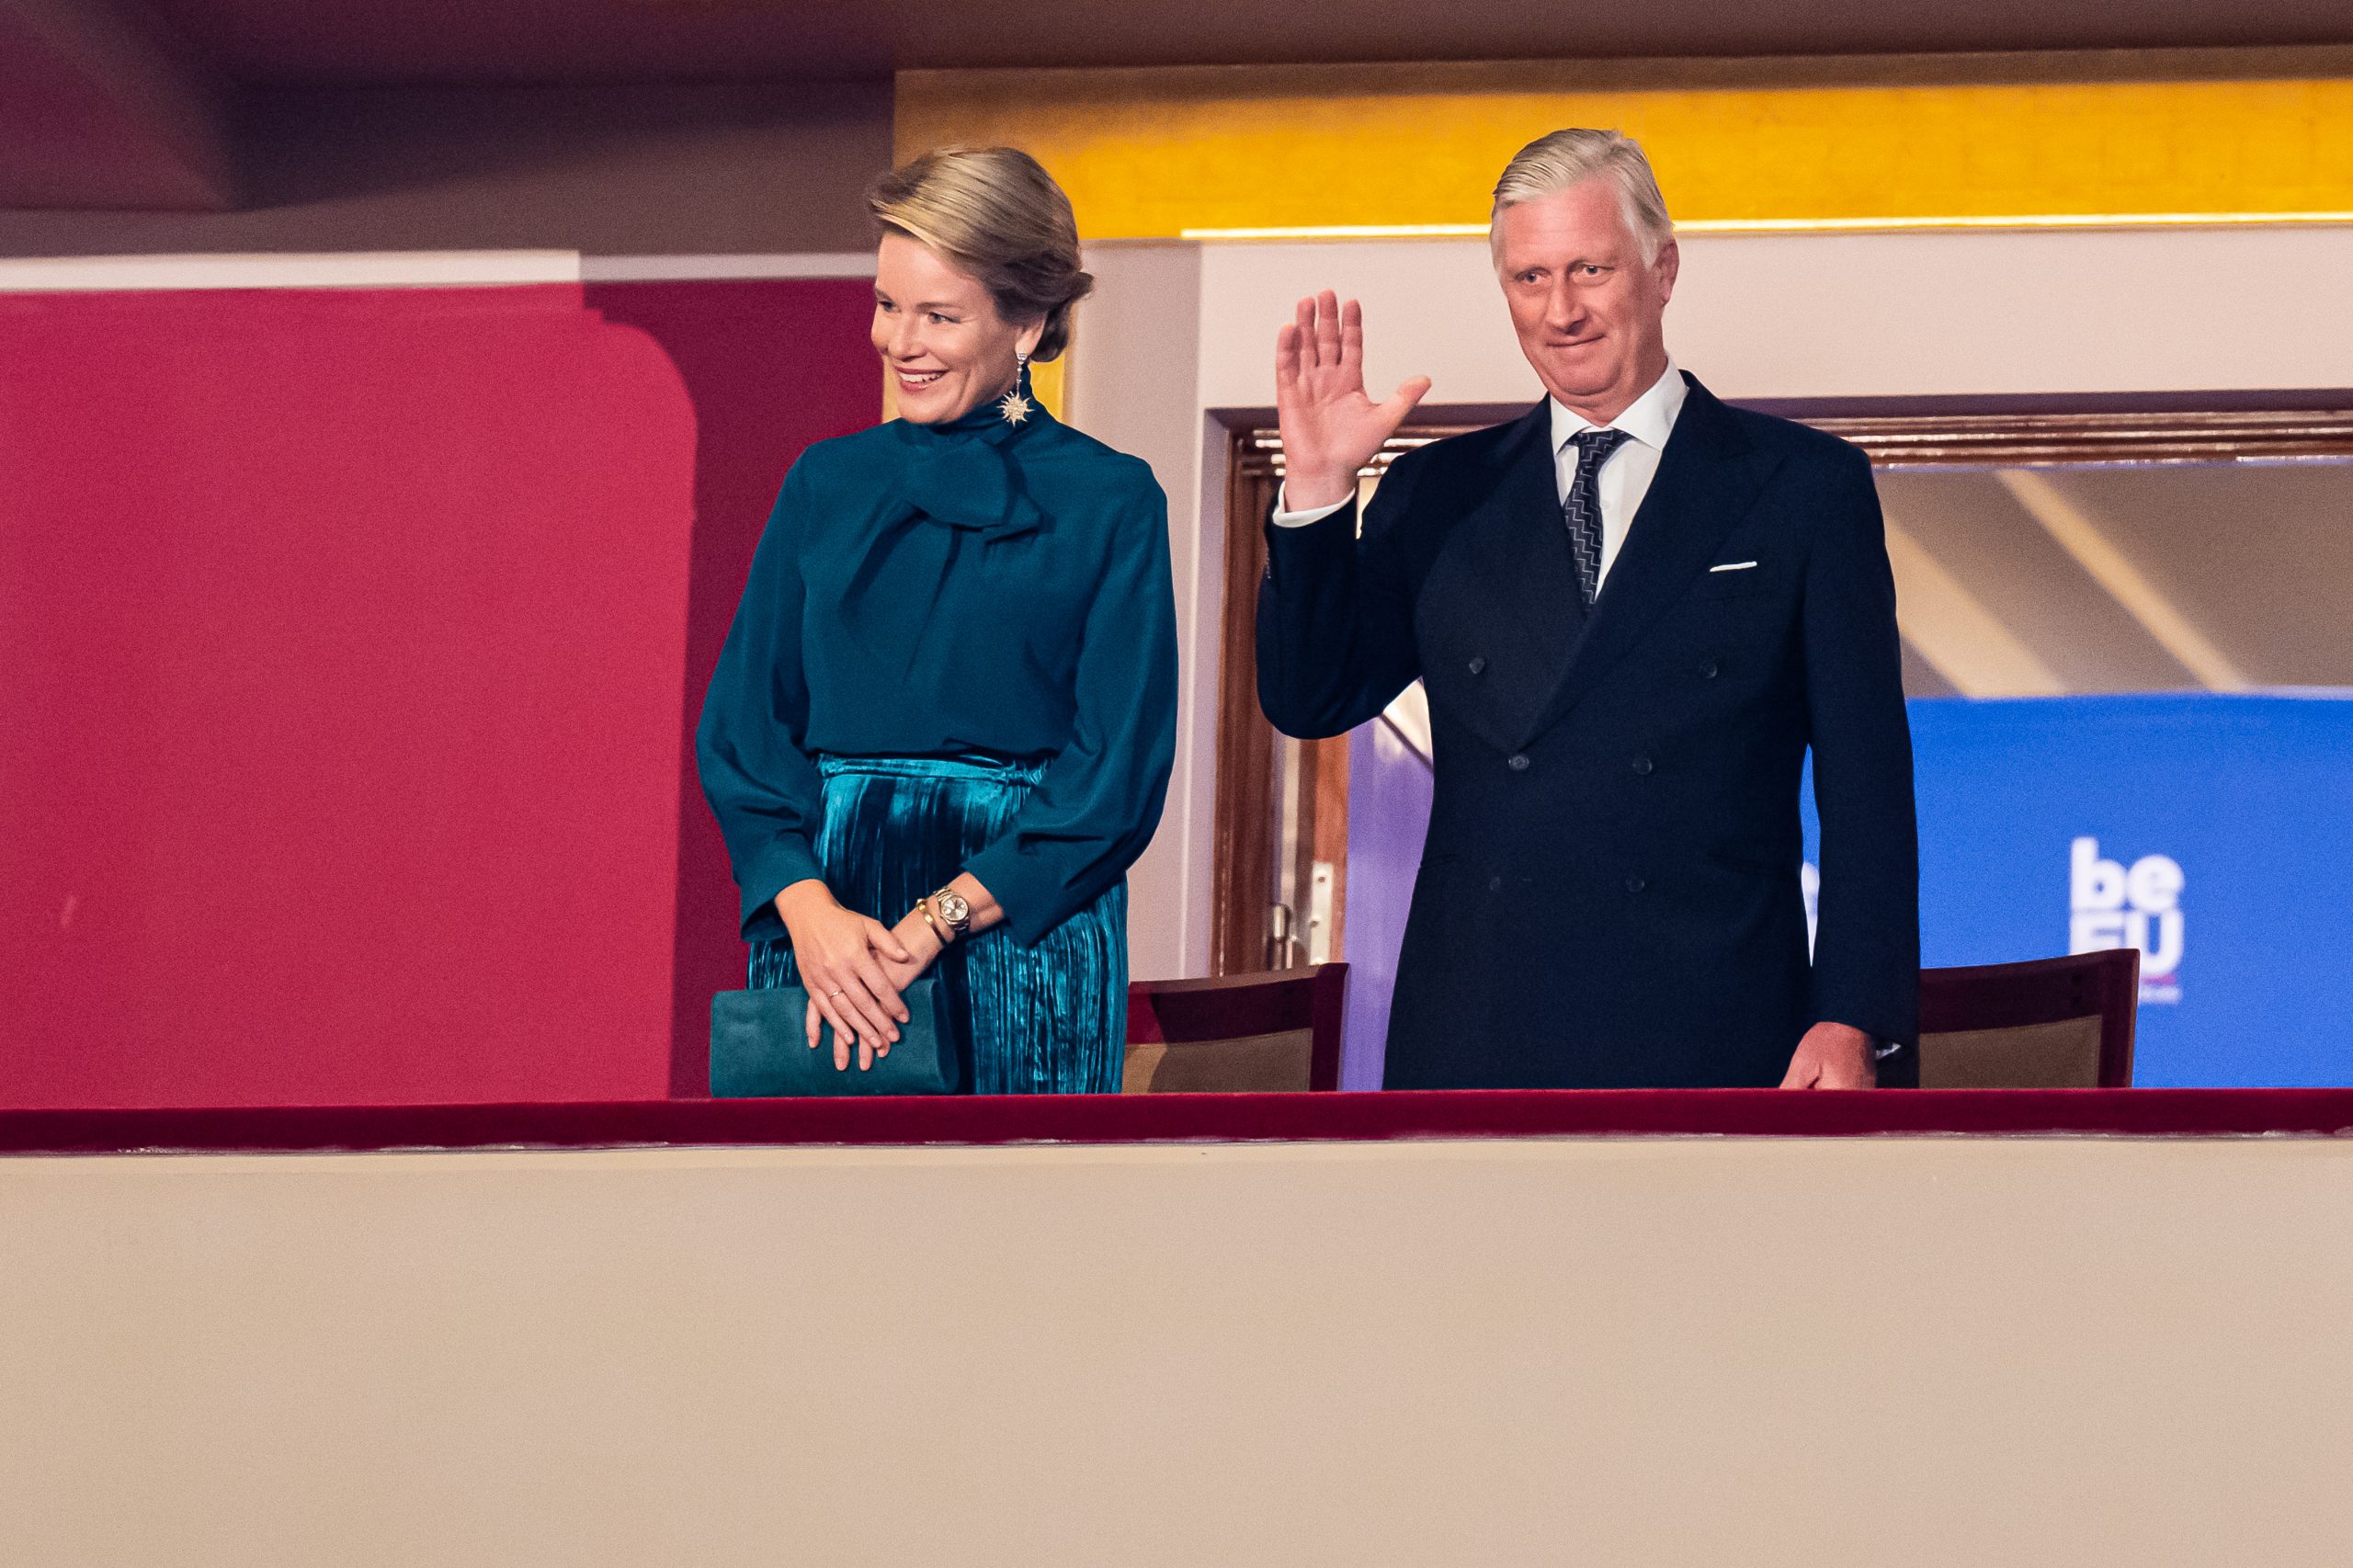 Le roi et la reine au balcon. Le roi salue le public.